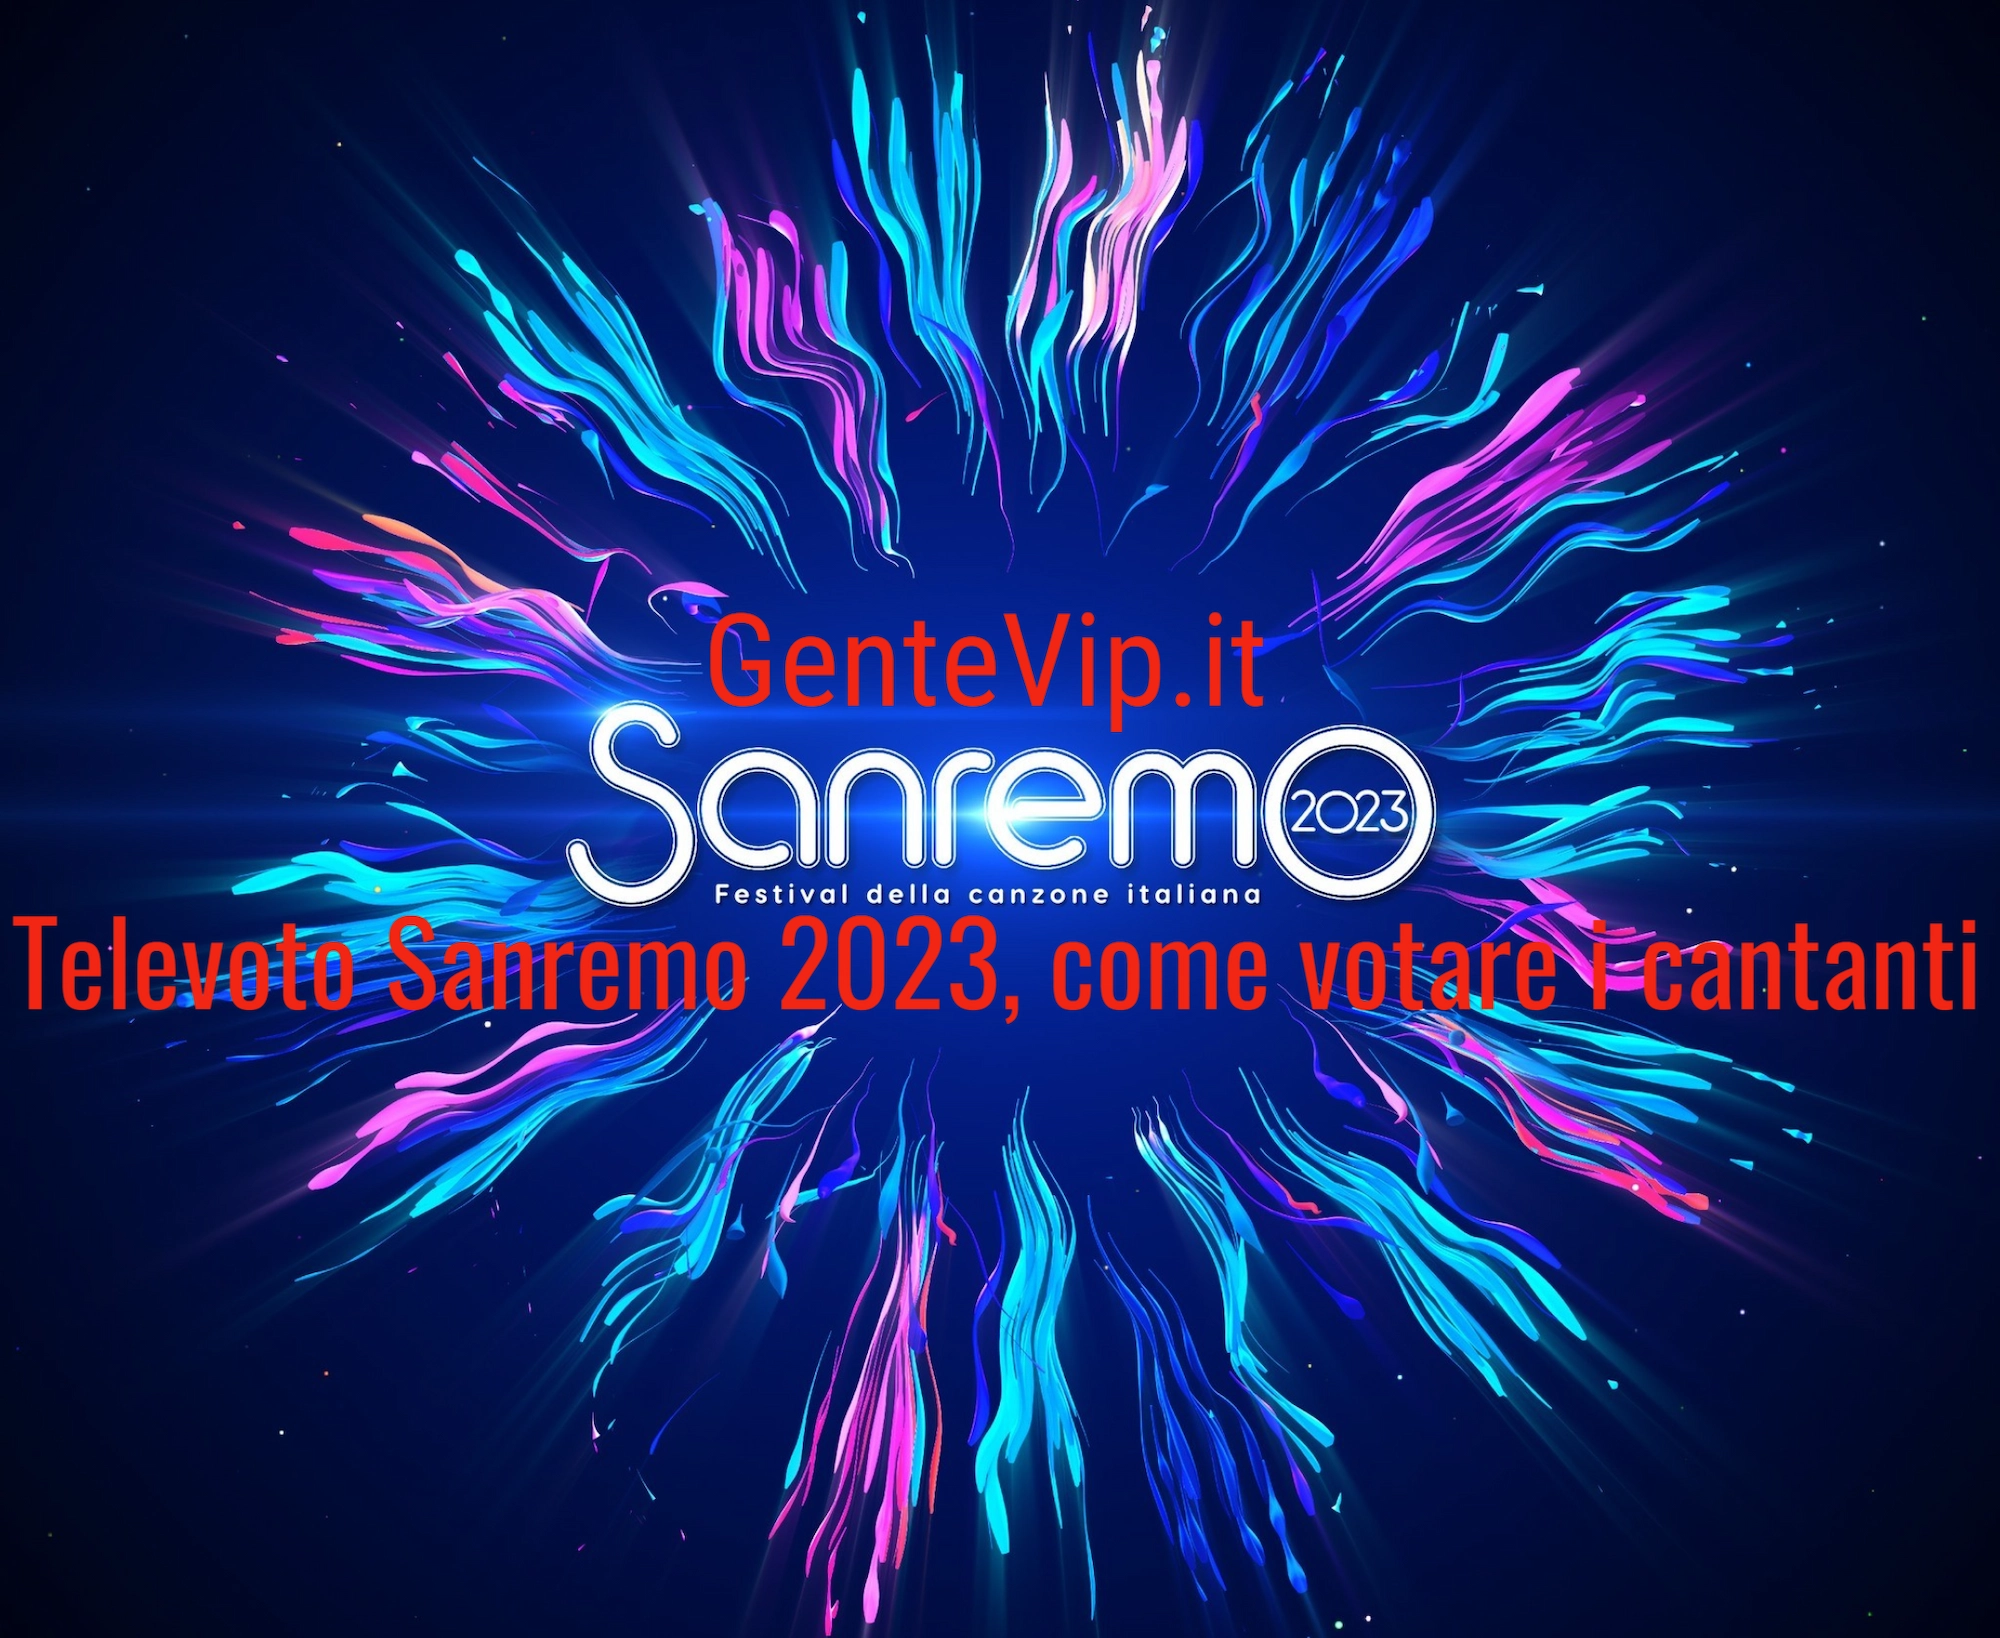 Televoto Sanremo 2023, codici cantanti modalità di voto e come votare i cantanti in gara